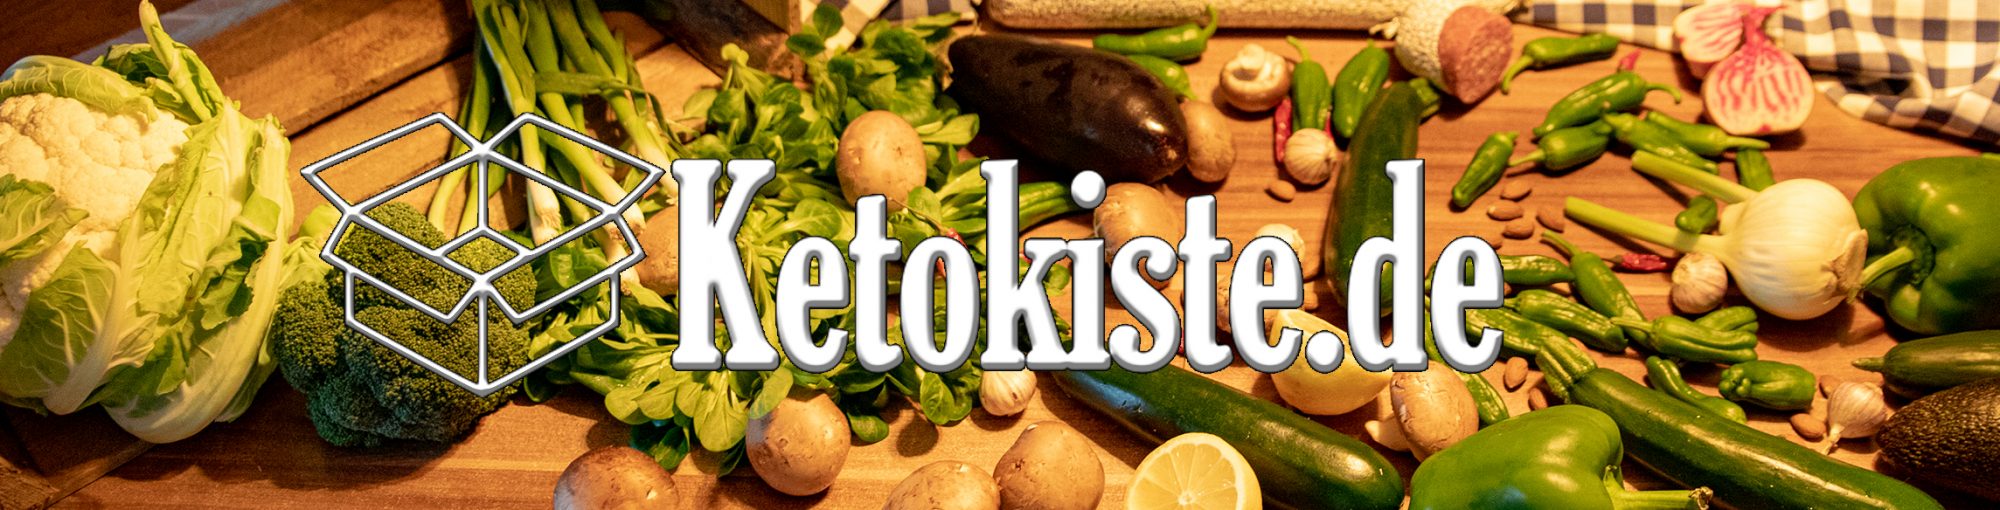 Ketokiste.de – Alles rund um die ketogene Ernährung